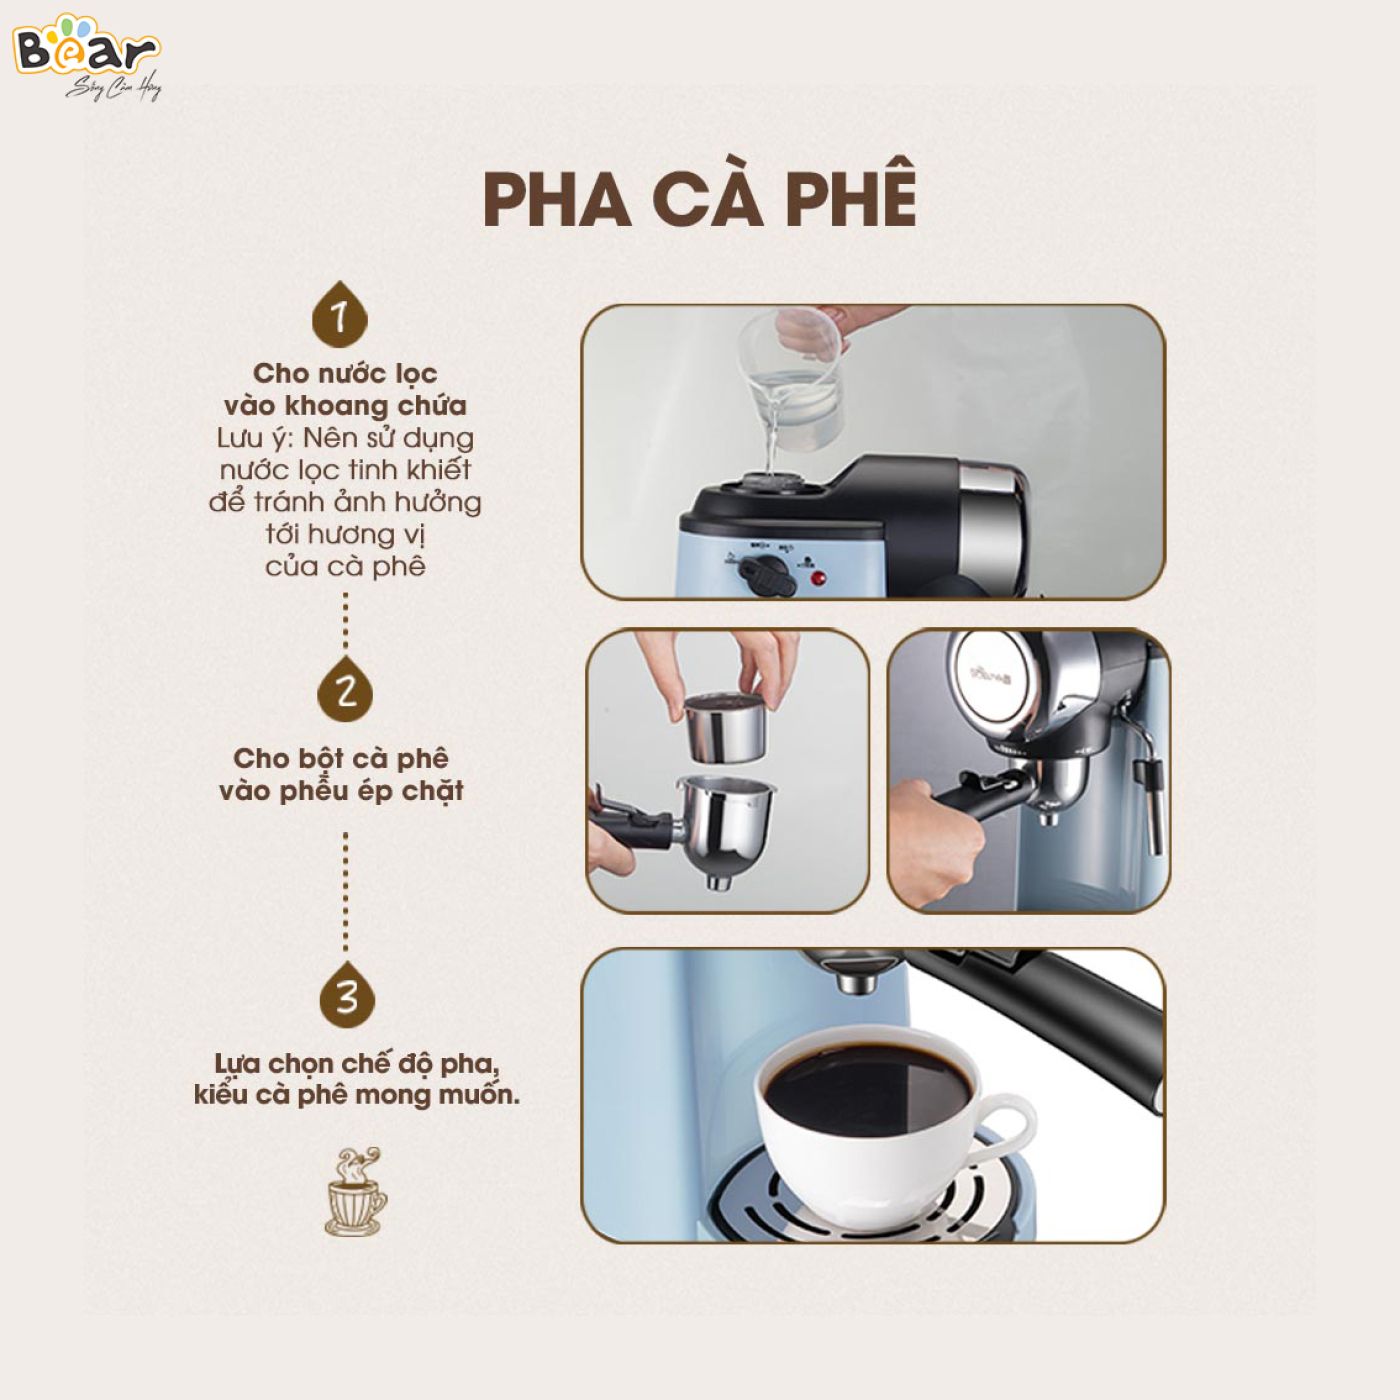 Máy Pha Caphe Bear Tự Động Pha Cafe, Pha Espresso Phong Cách Ý CF-B02V1